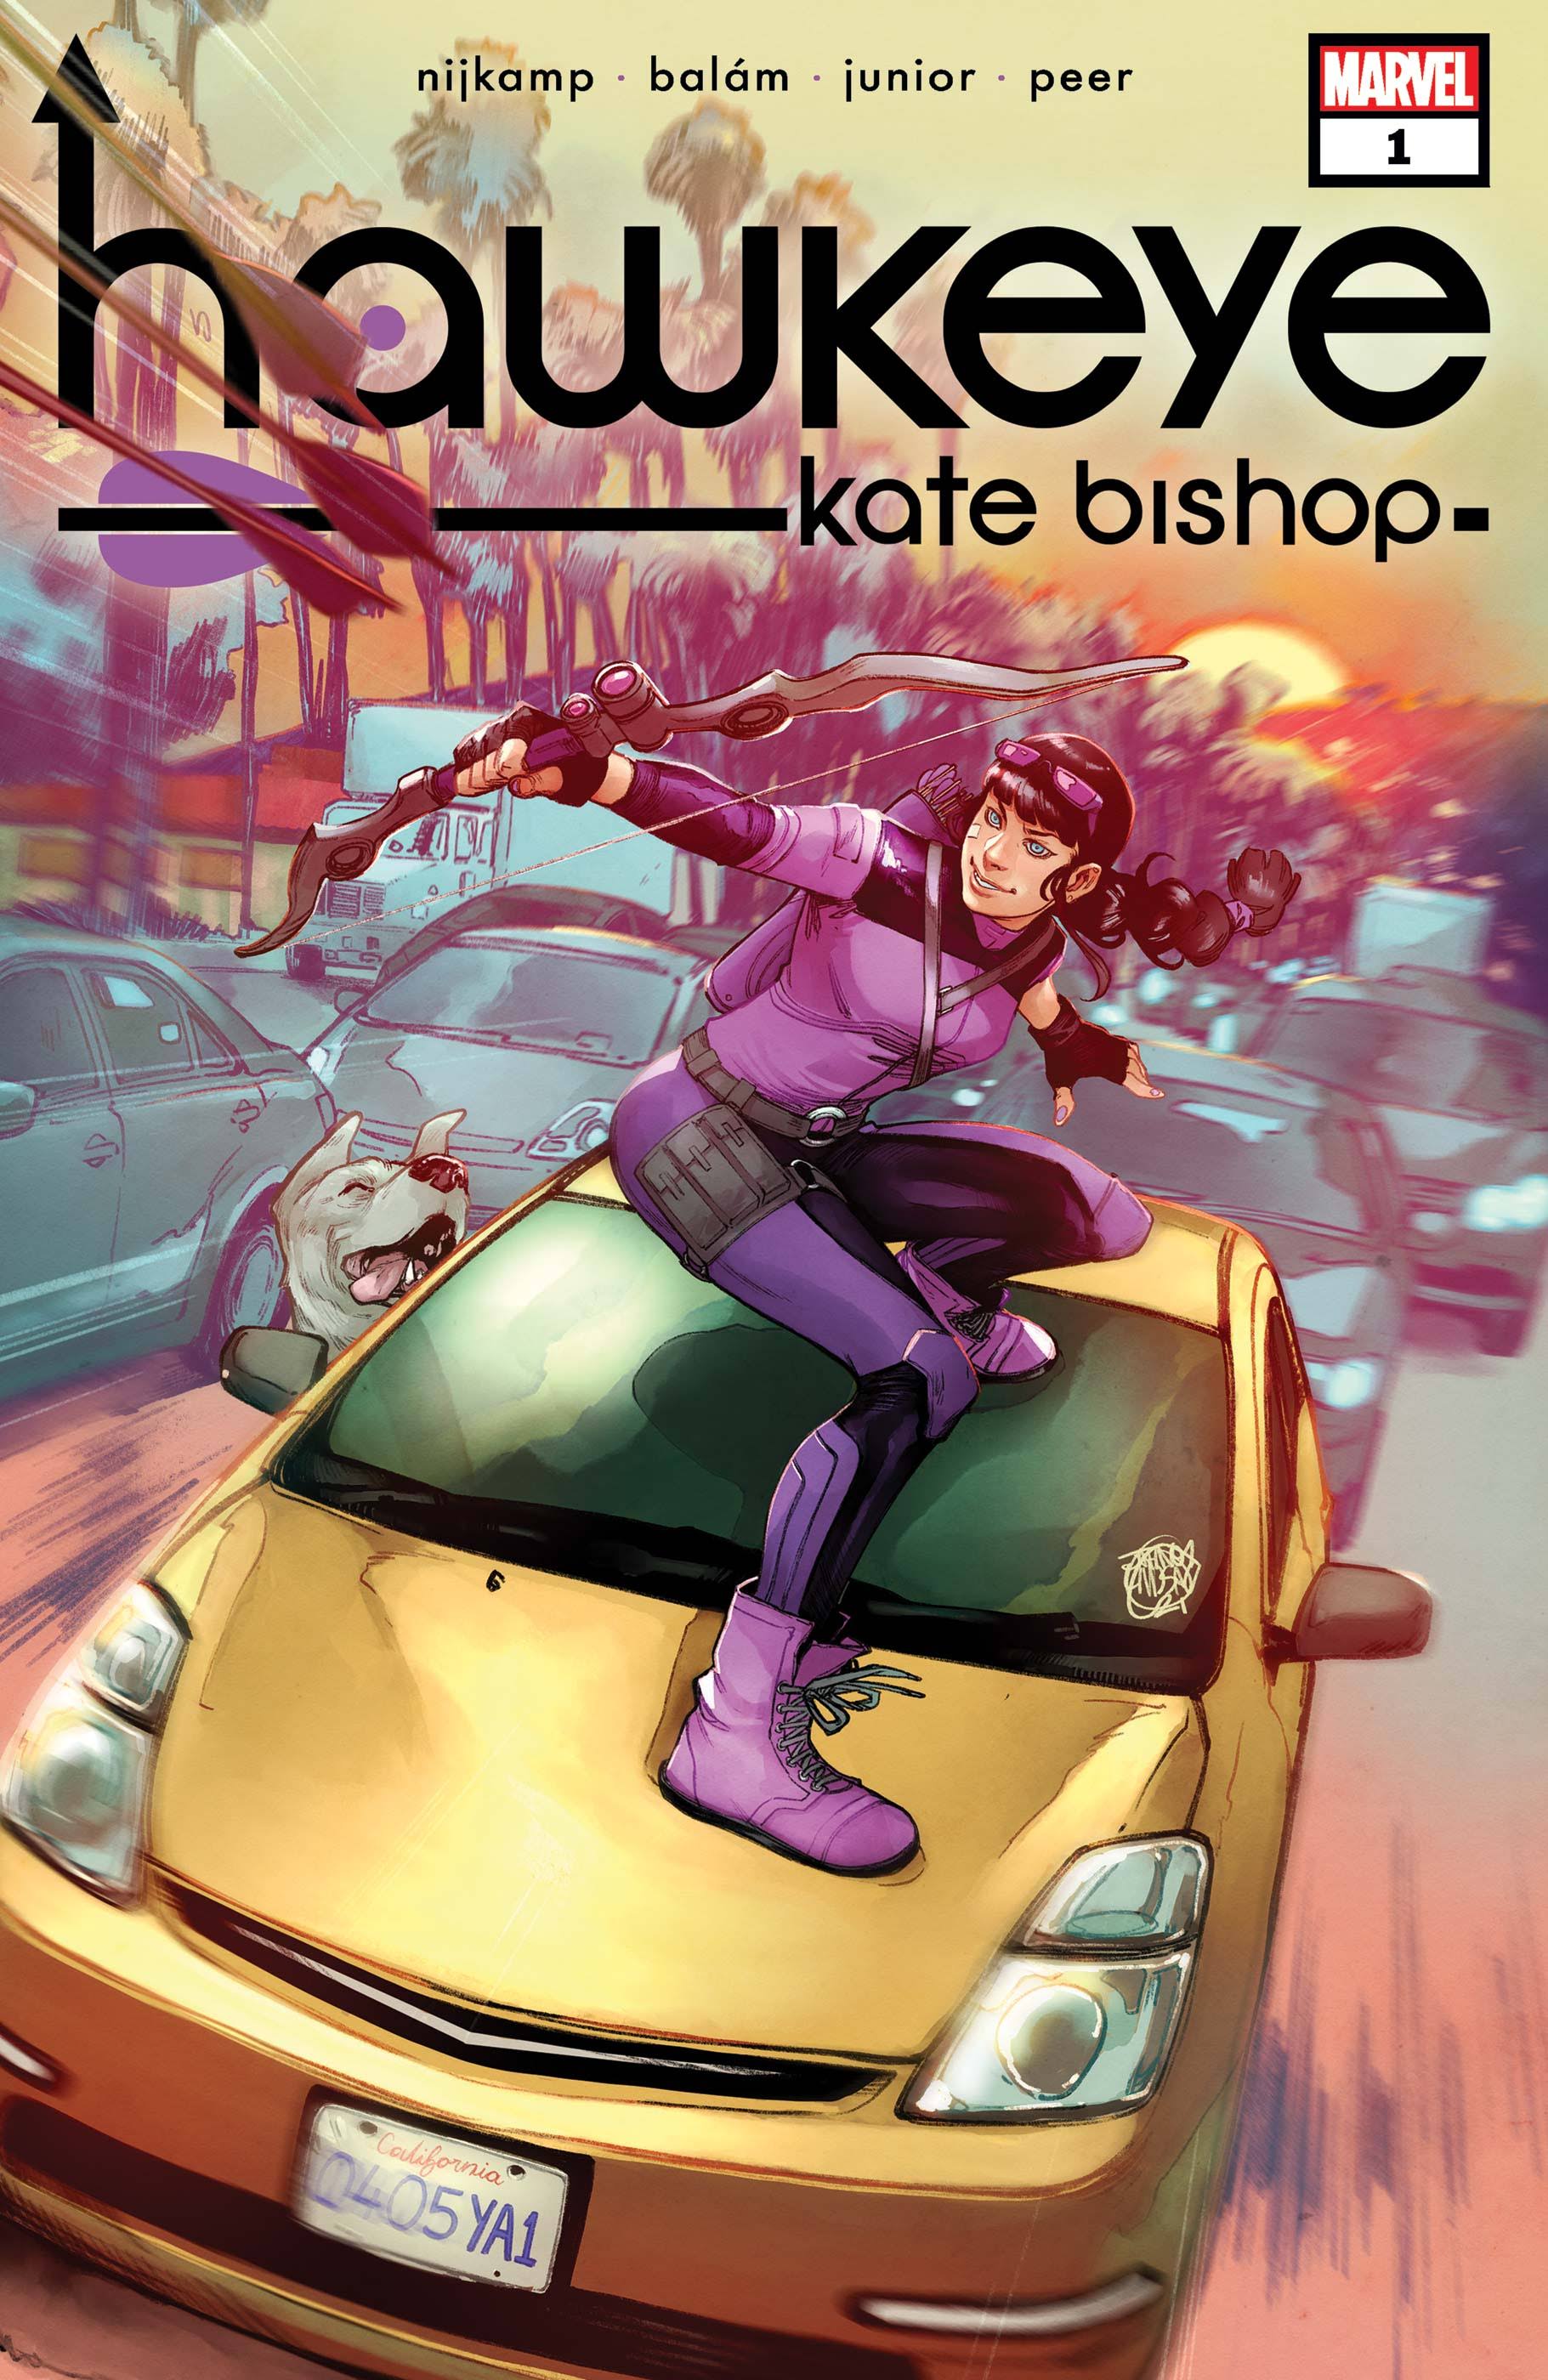 Hawkeye Kate Bishop by Marieke Nijkamp